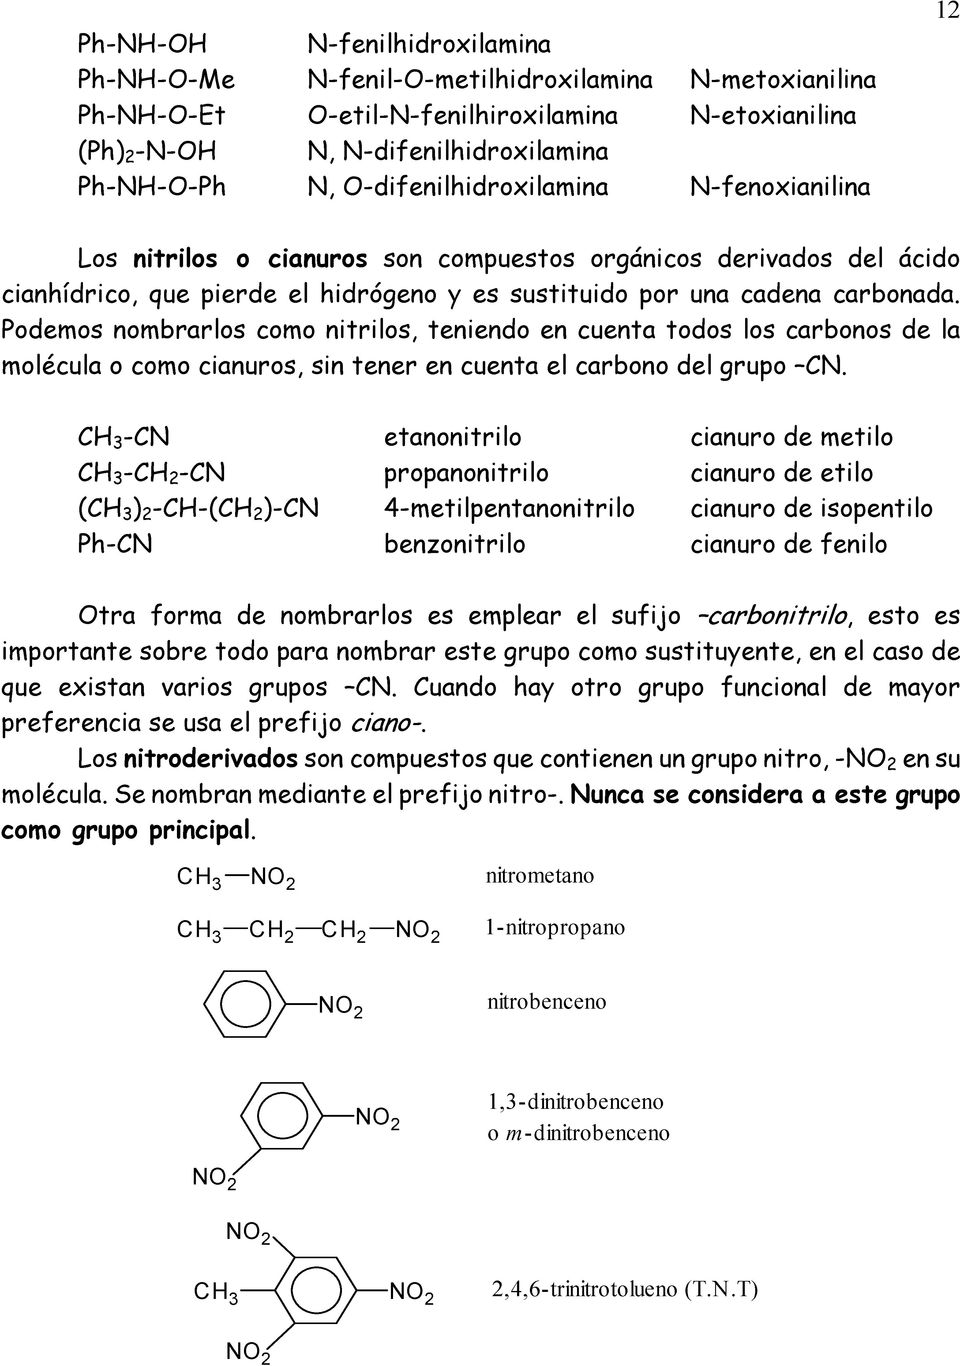 Podemos nombrarlos como nitrilos, teniendo en cuenta todos los carbonos de la molécula o como cianuros, sin tener en cuenta el carbono del grupo CN.